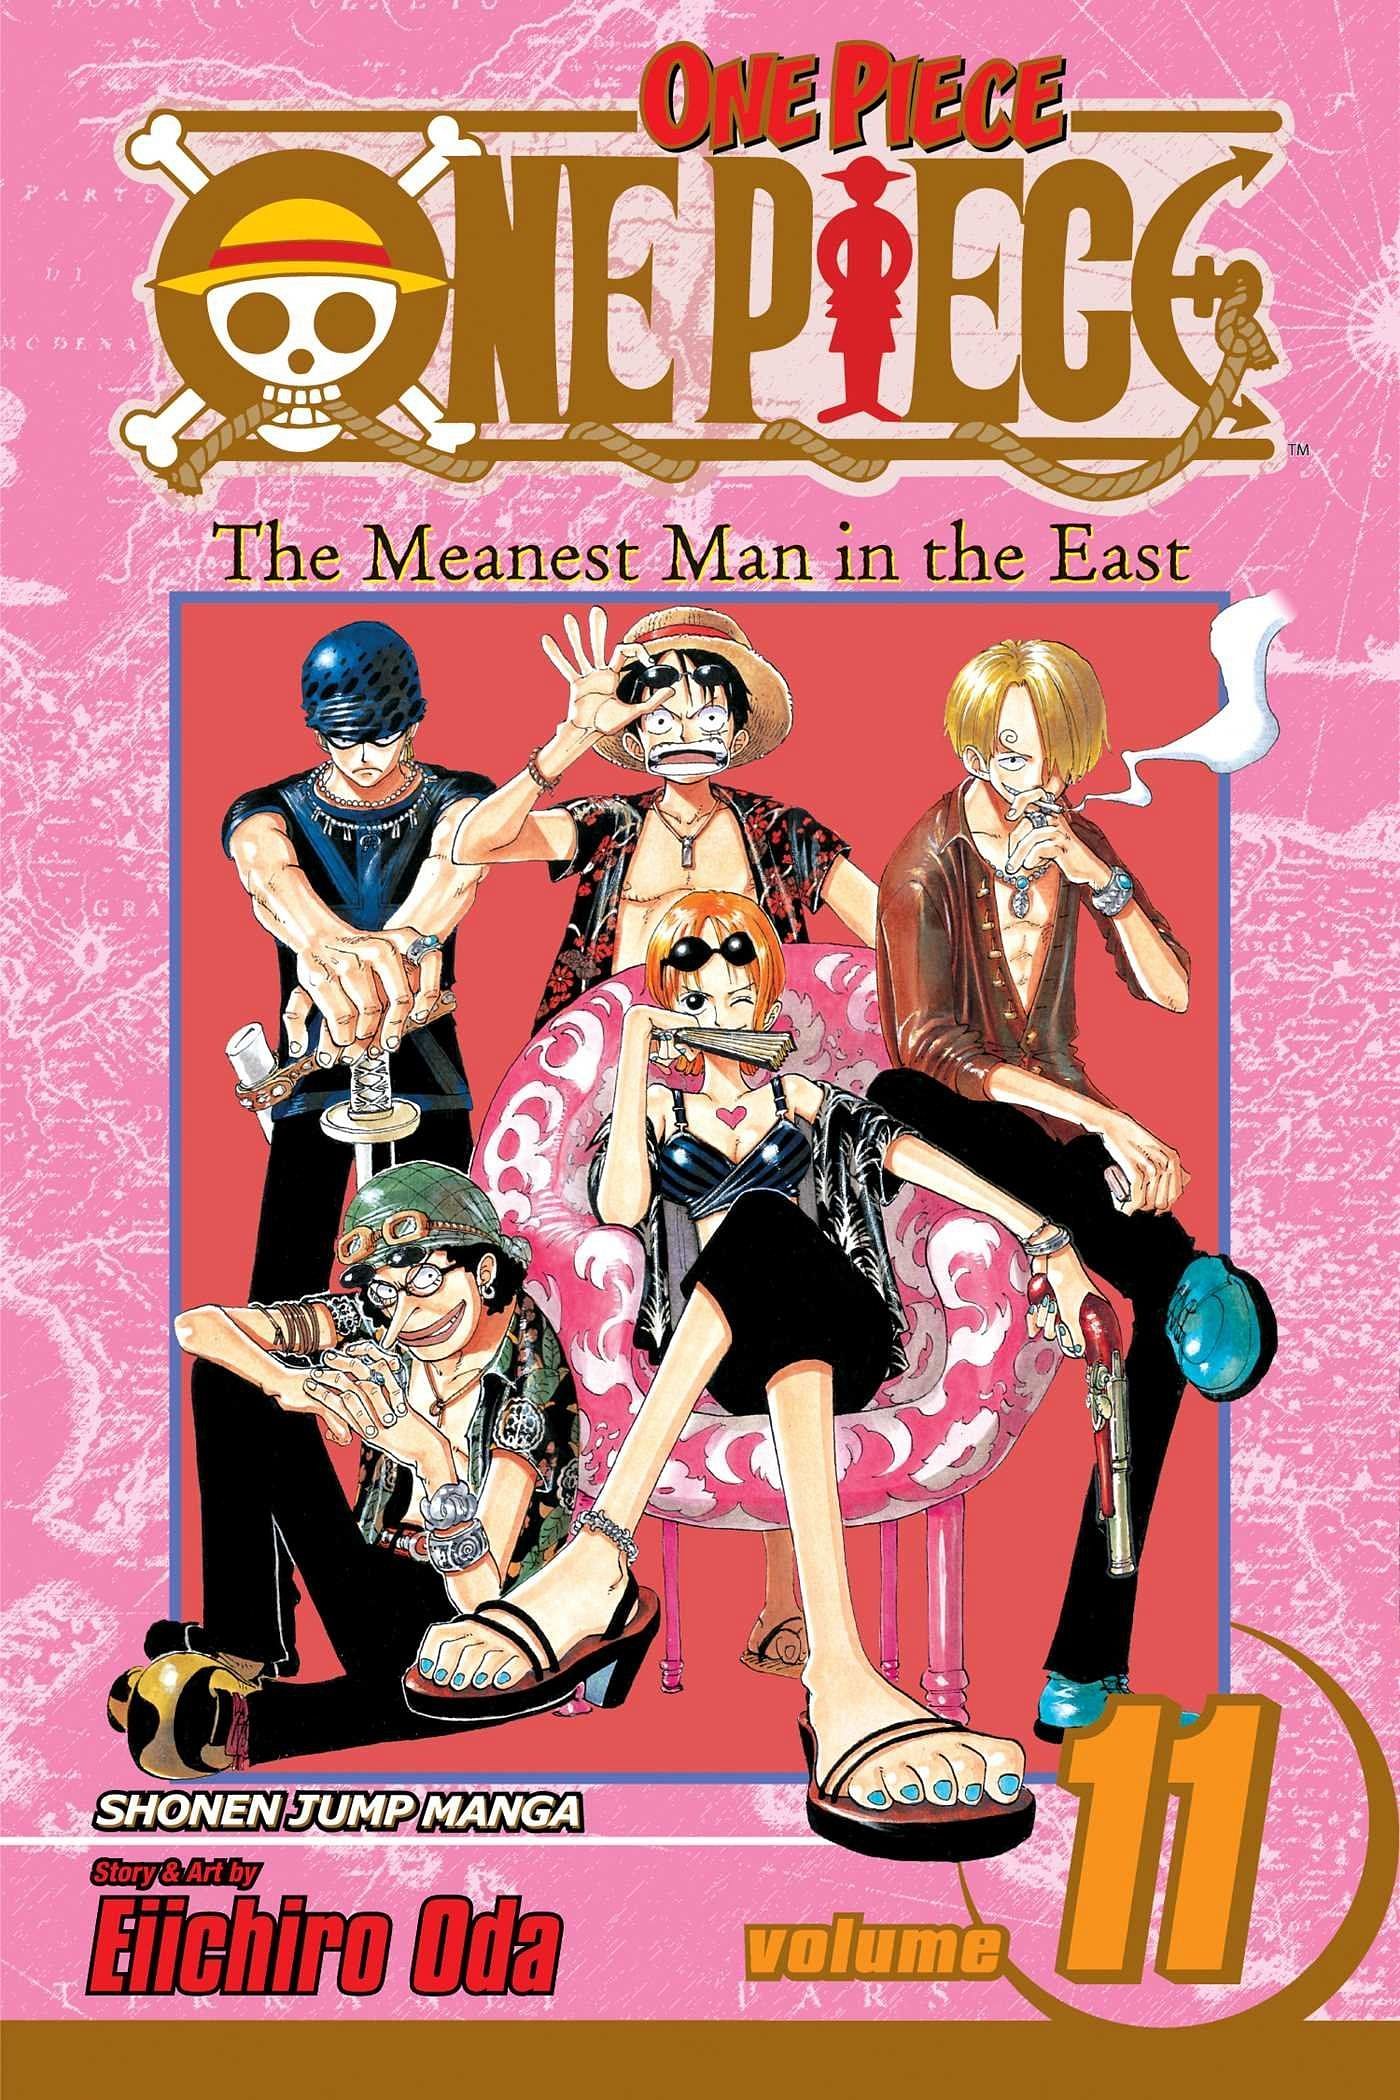 The cover art for One Piece Volume 11 (Image via Shueisha)